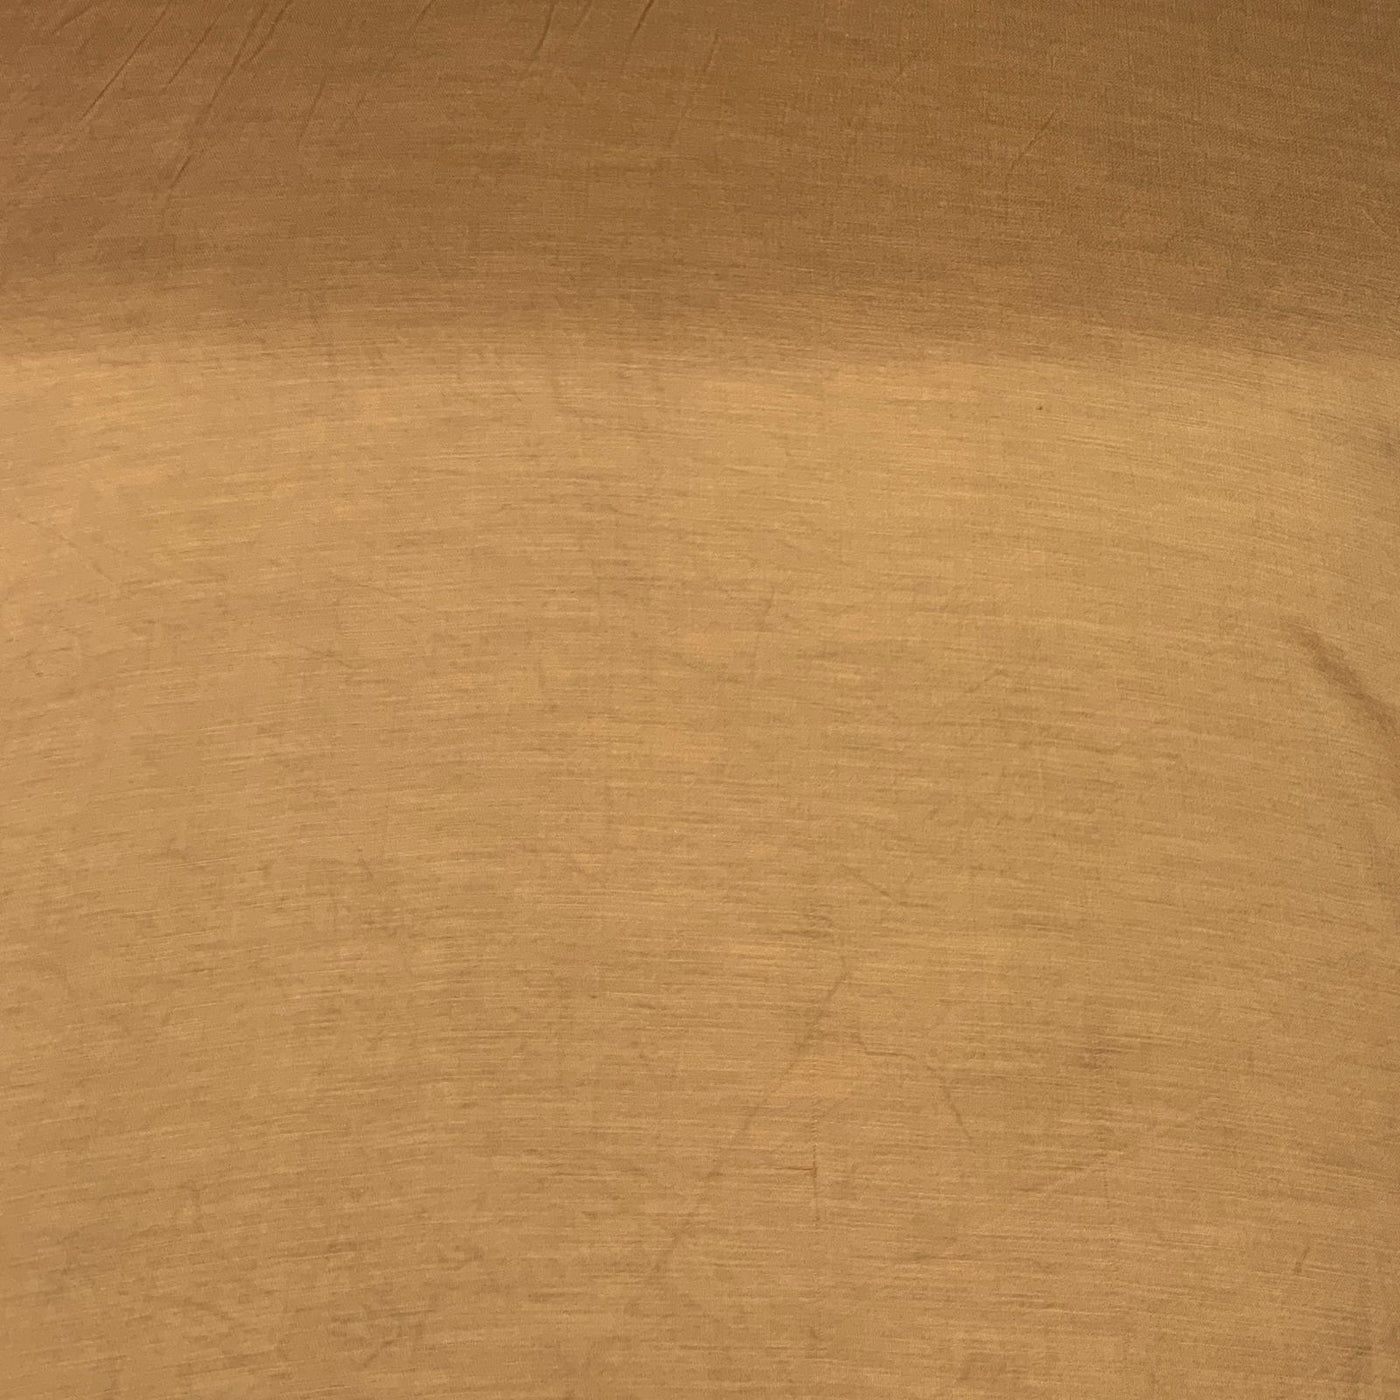 Mustard Yellow Plain Satin Linen Fabric